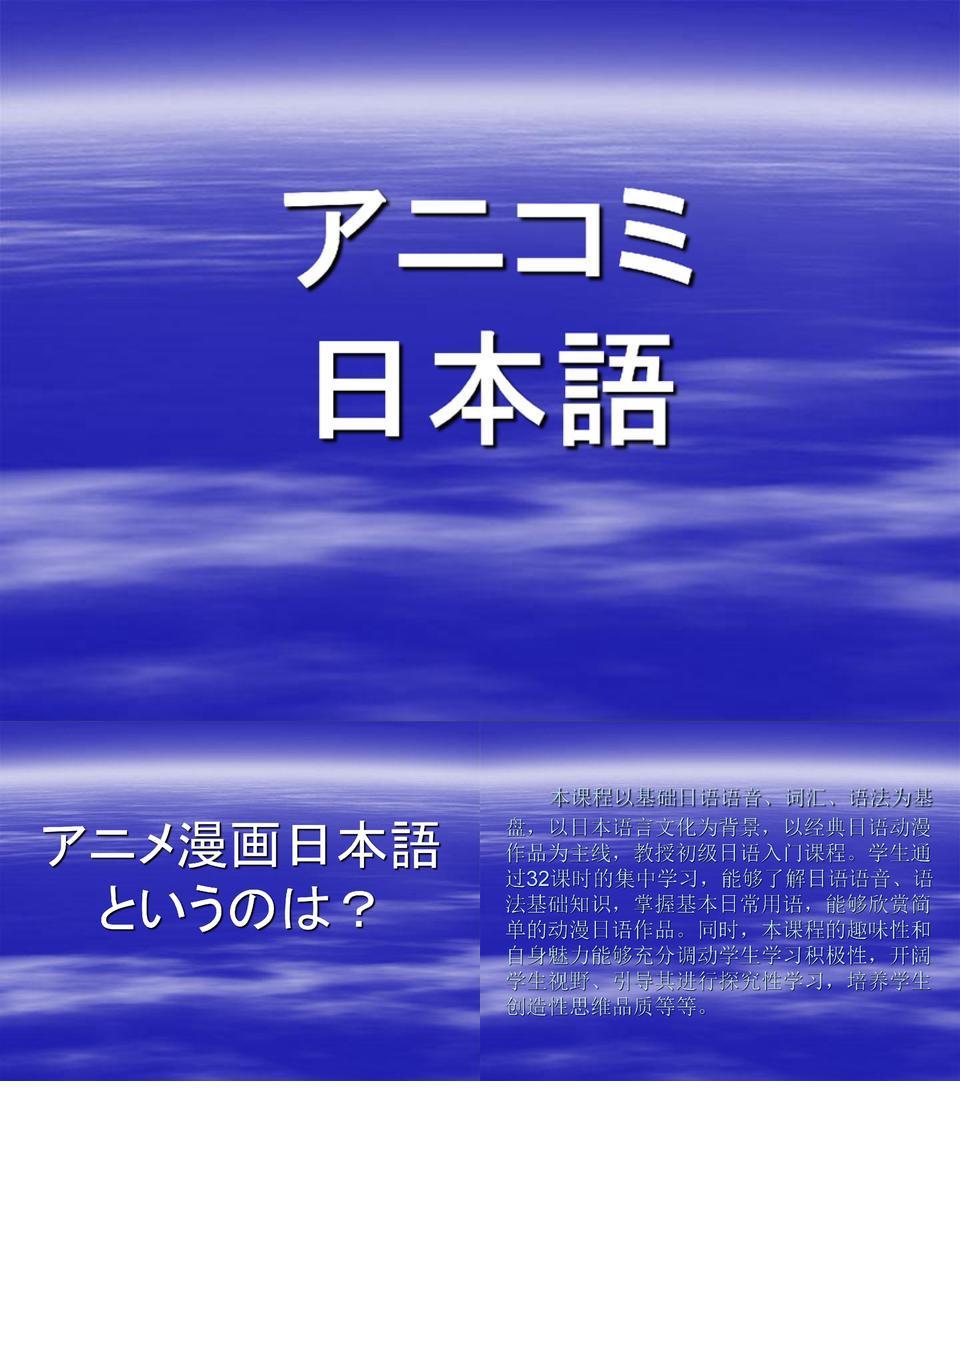 公修动漫日语课件缩编-20120916